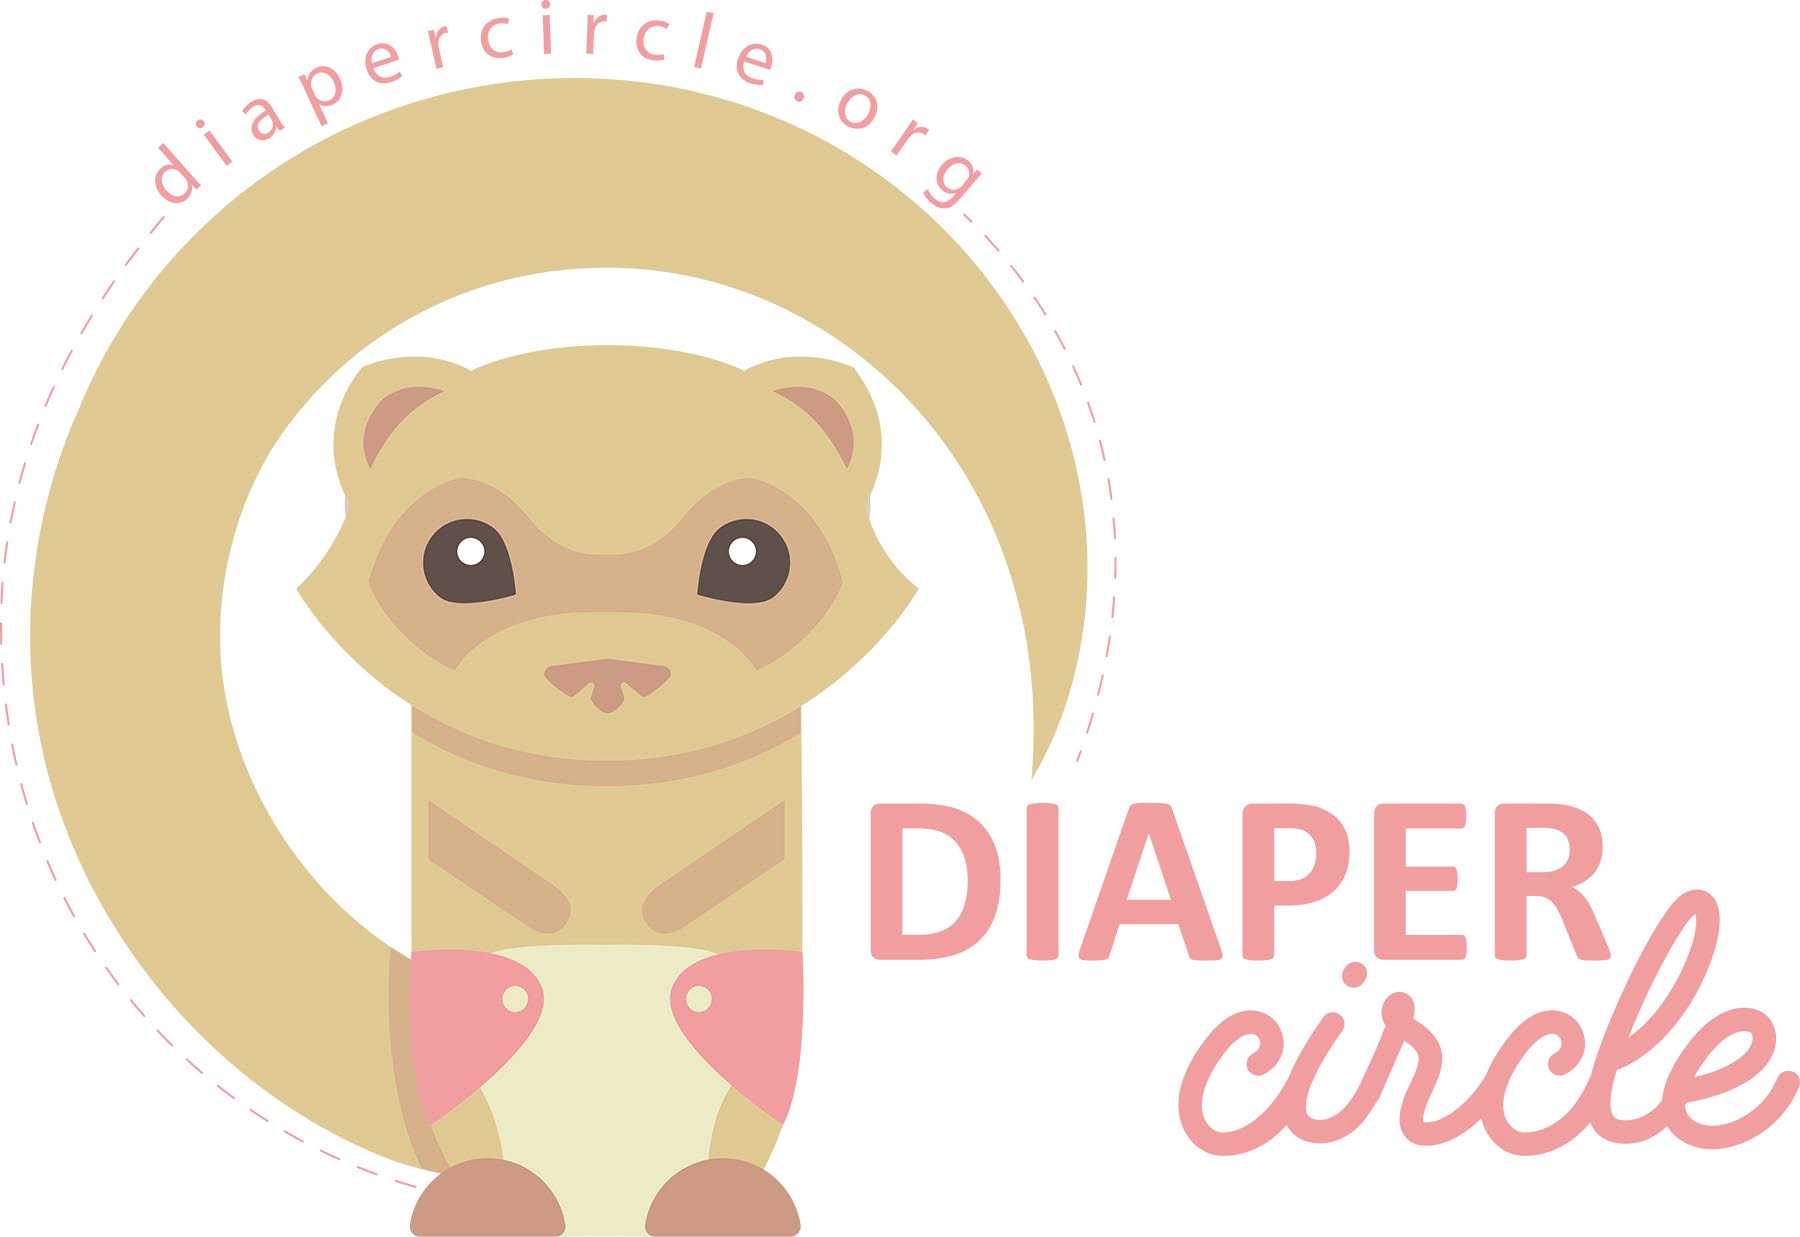 diaper logo - Central Square Theater